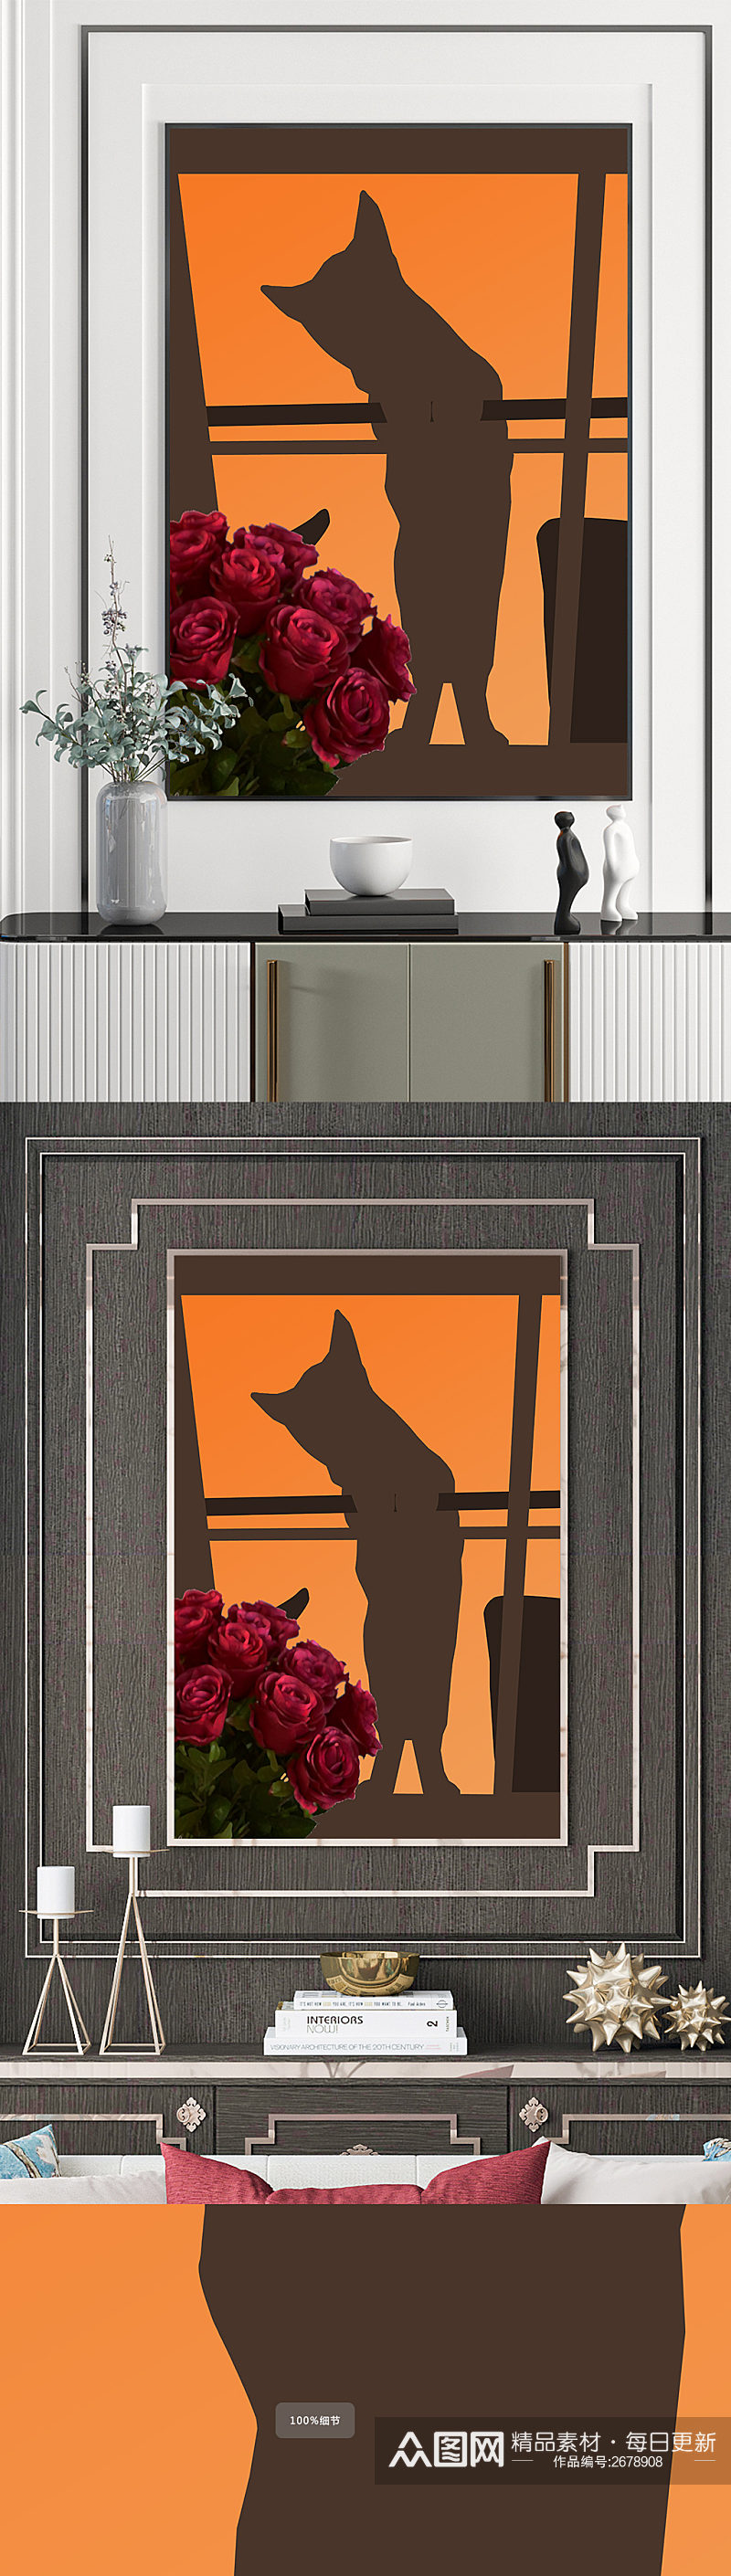 猫咪窗户花卉装饰画素材